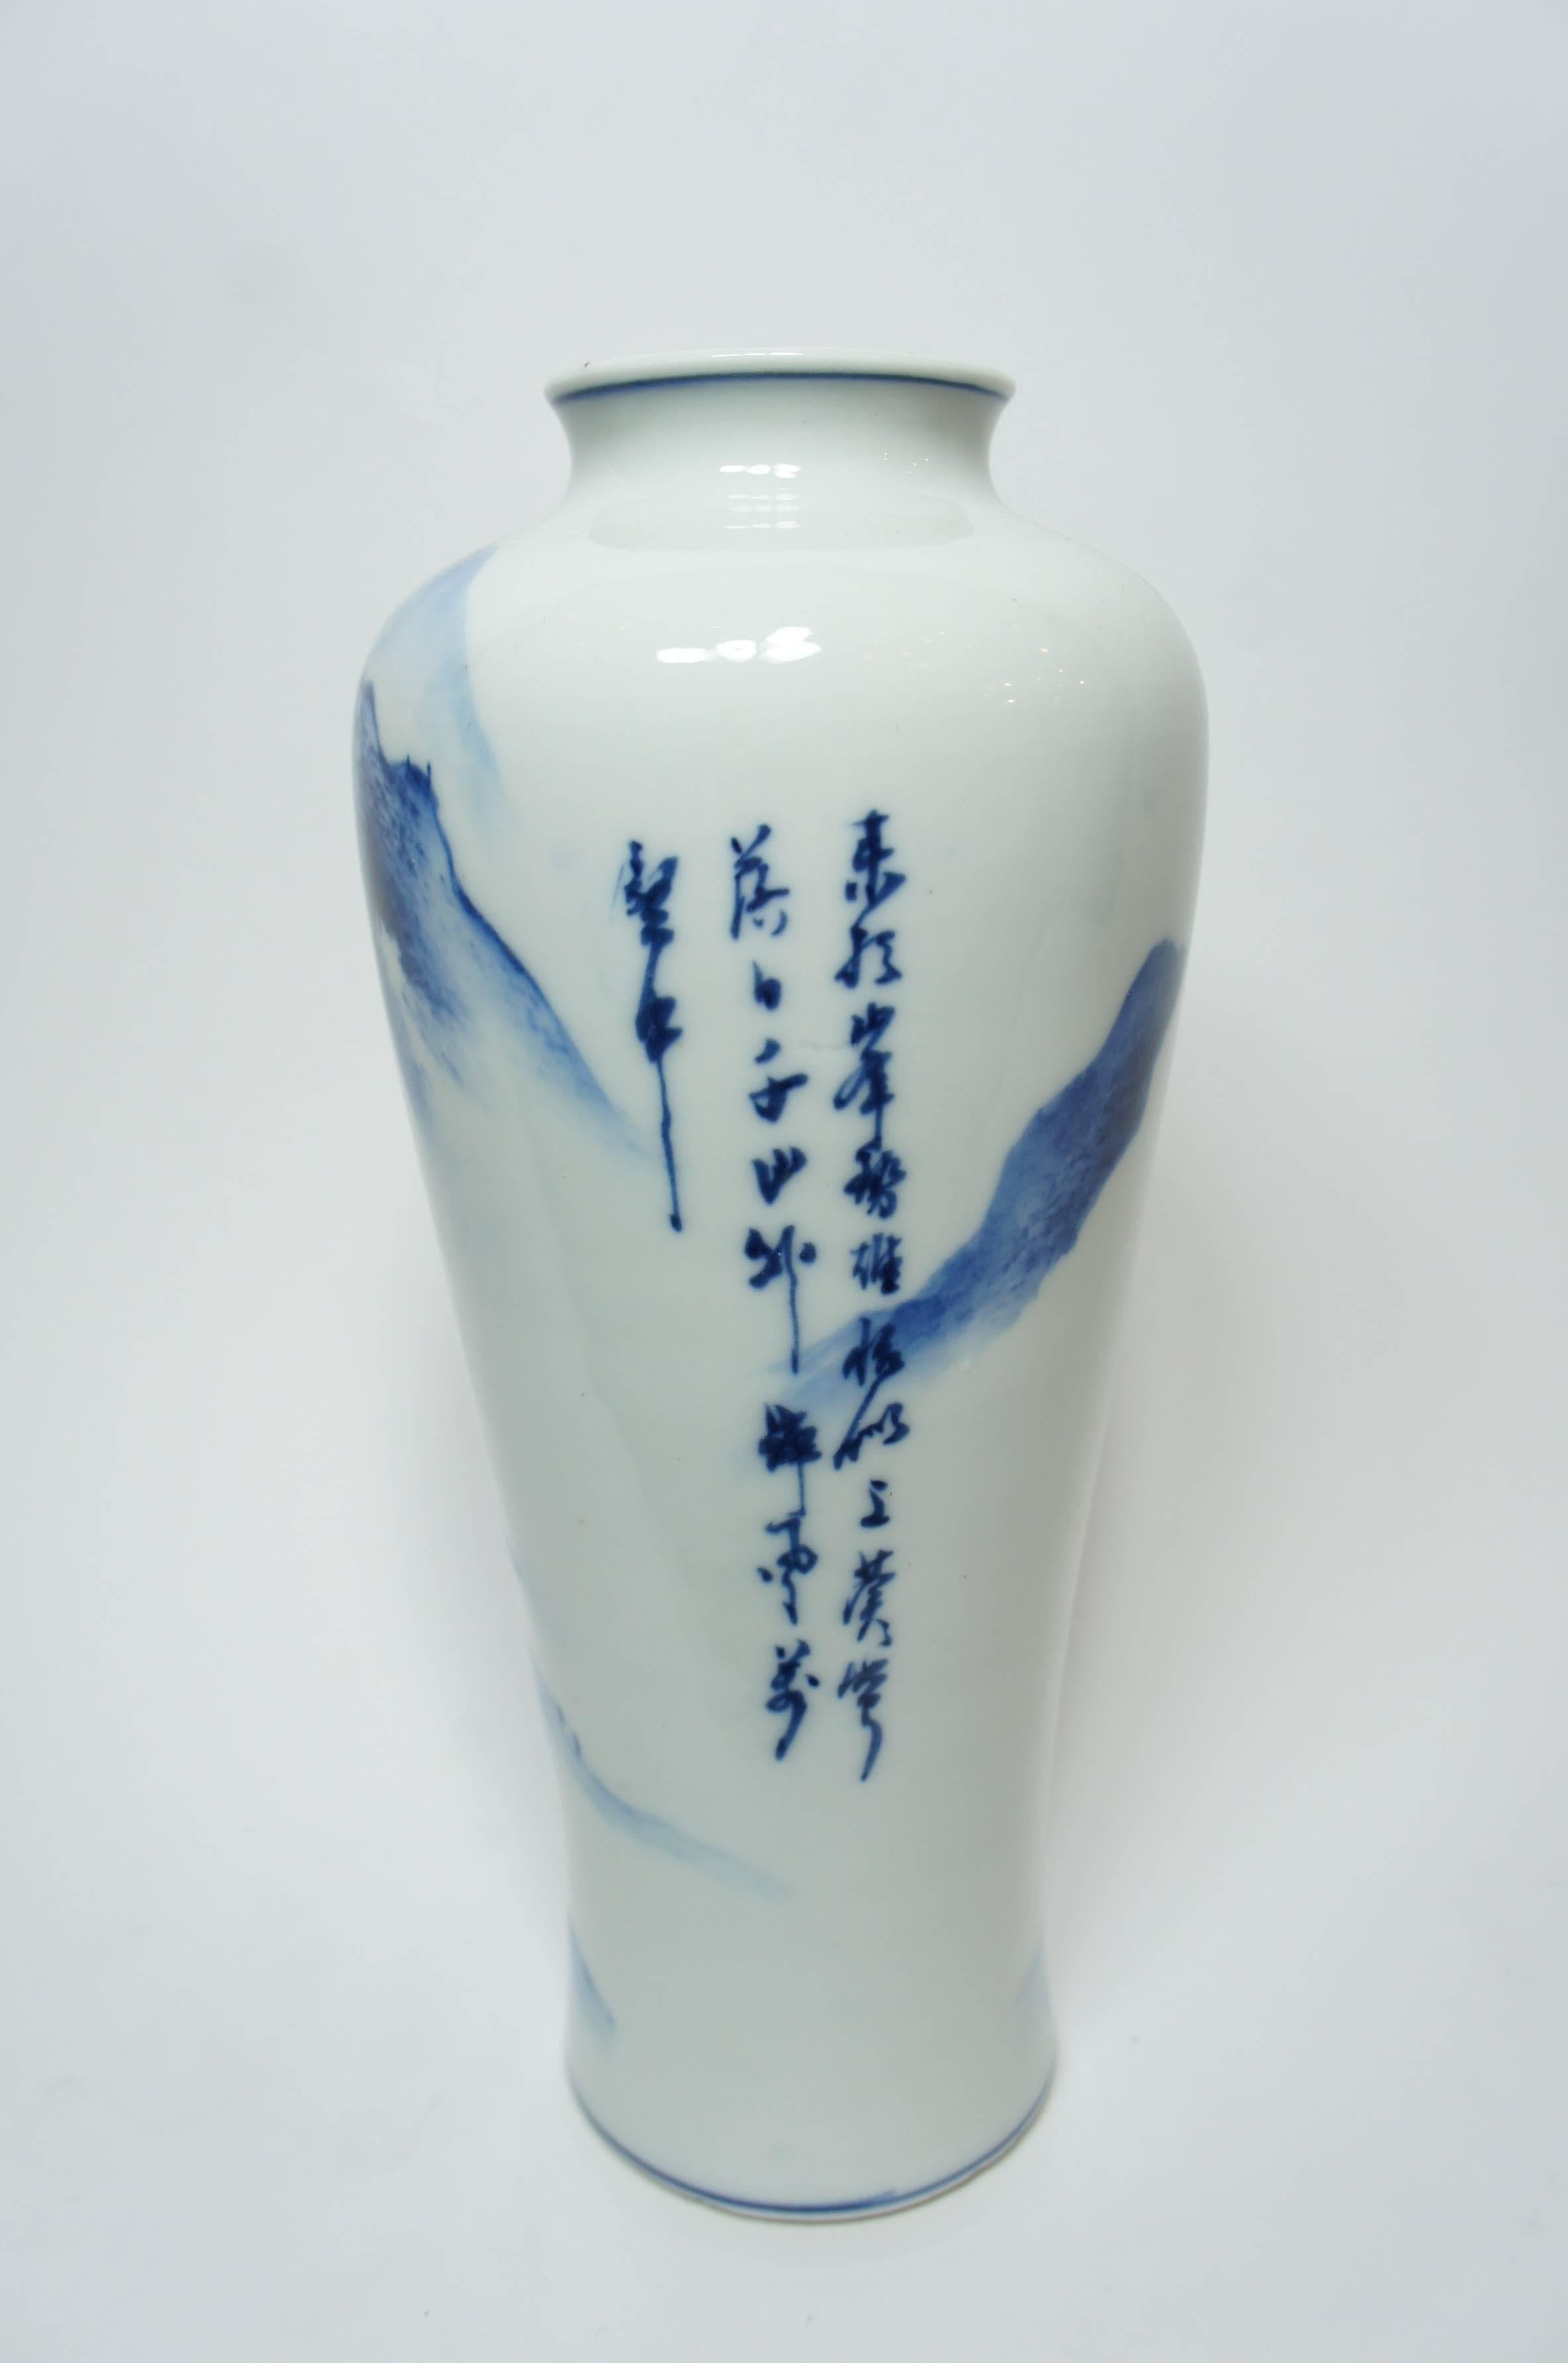 Showa Japanese Indigo Blue Chinese Style Landscape on White Porcelain Imari Vase 1950s